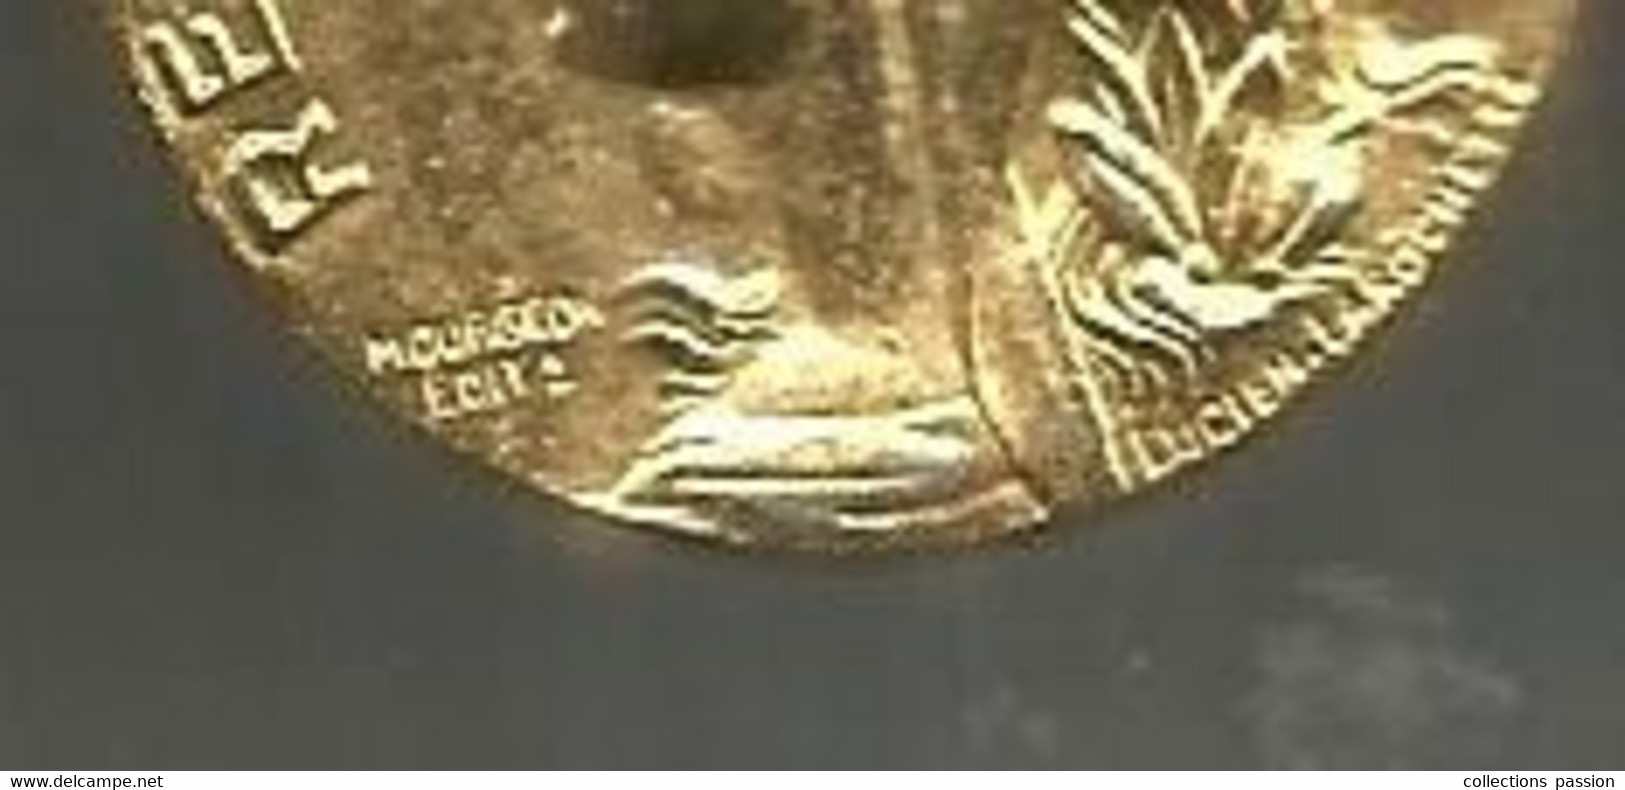 Médaille Du Travail, Commerce Et Industrie, Signée Mourgeon Edit R Et Lucien Larochette,1992, Frais Fr 2.25 E - Firma's